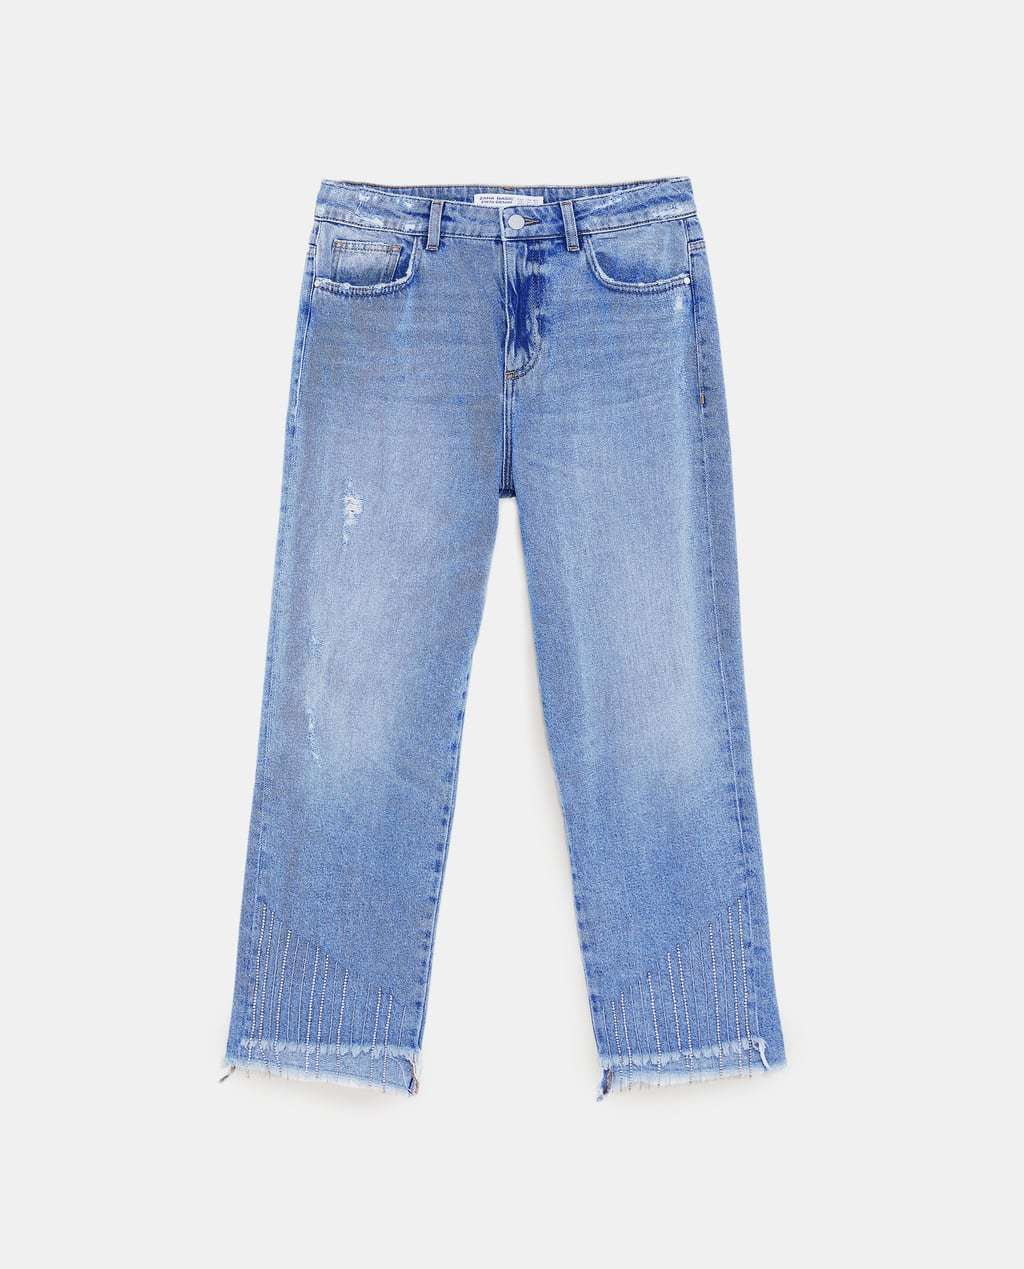 Jeans de Zara (39,95 euros)